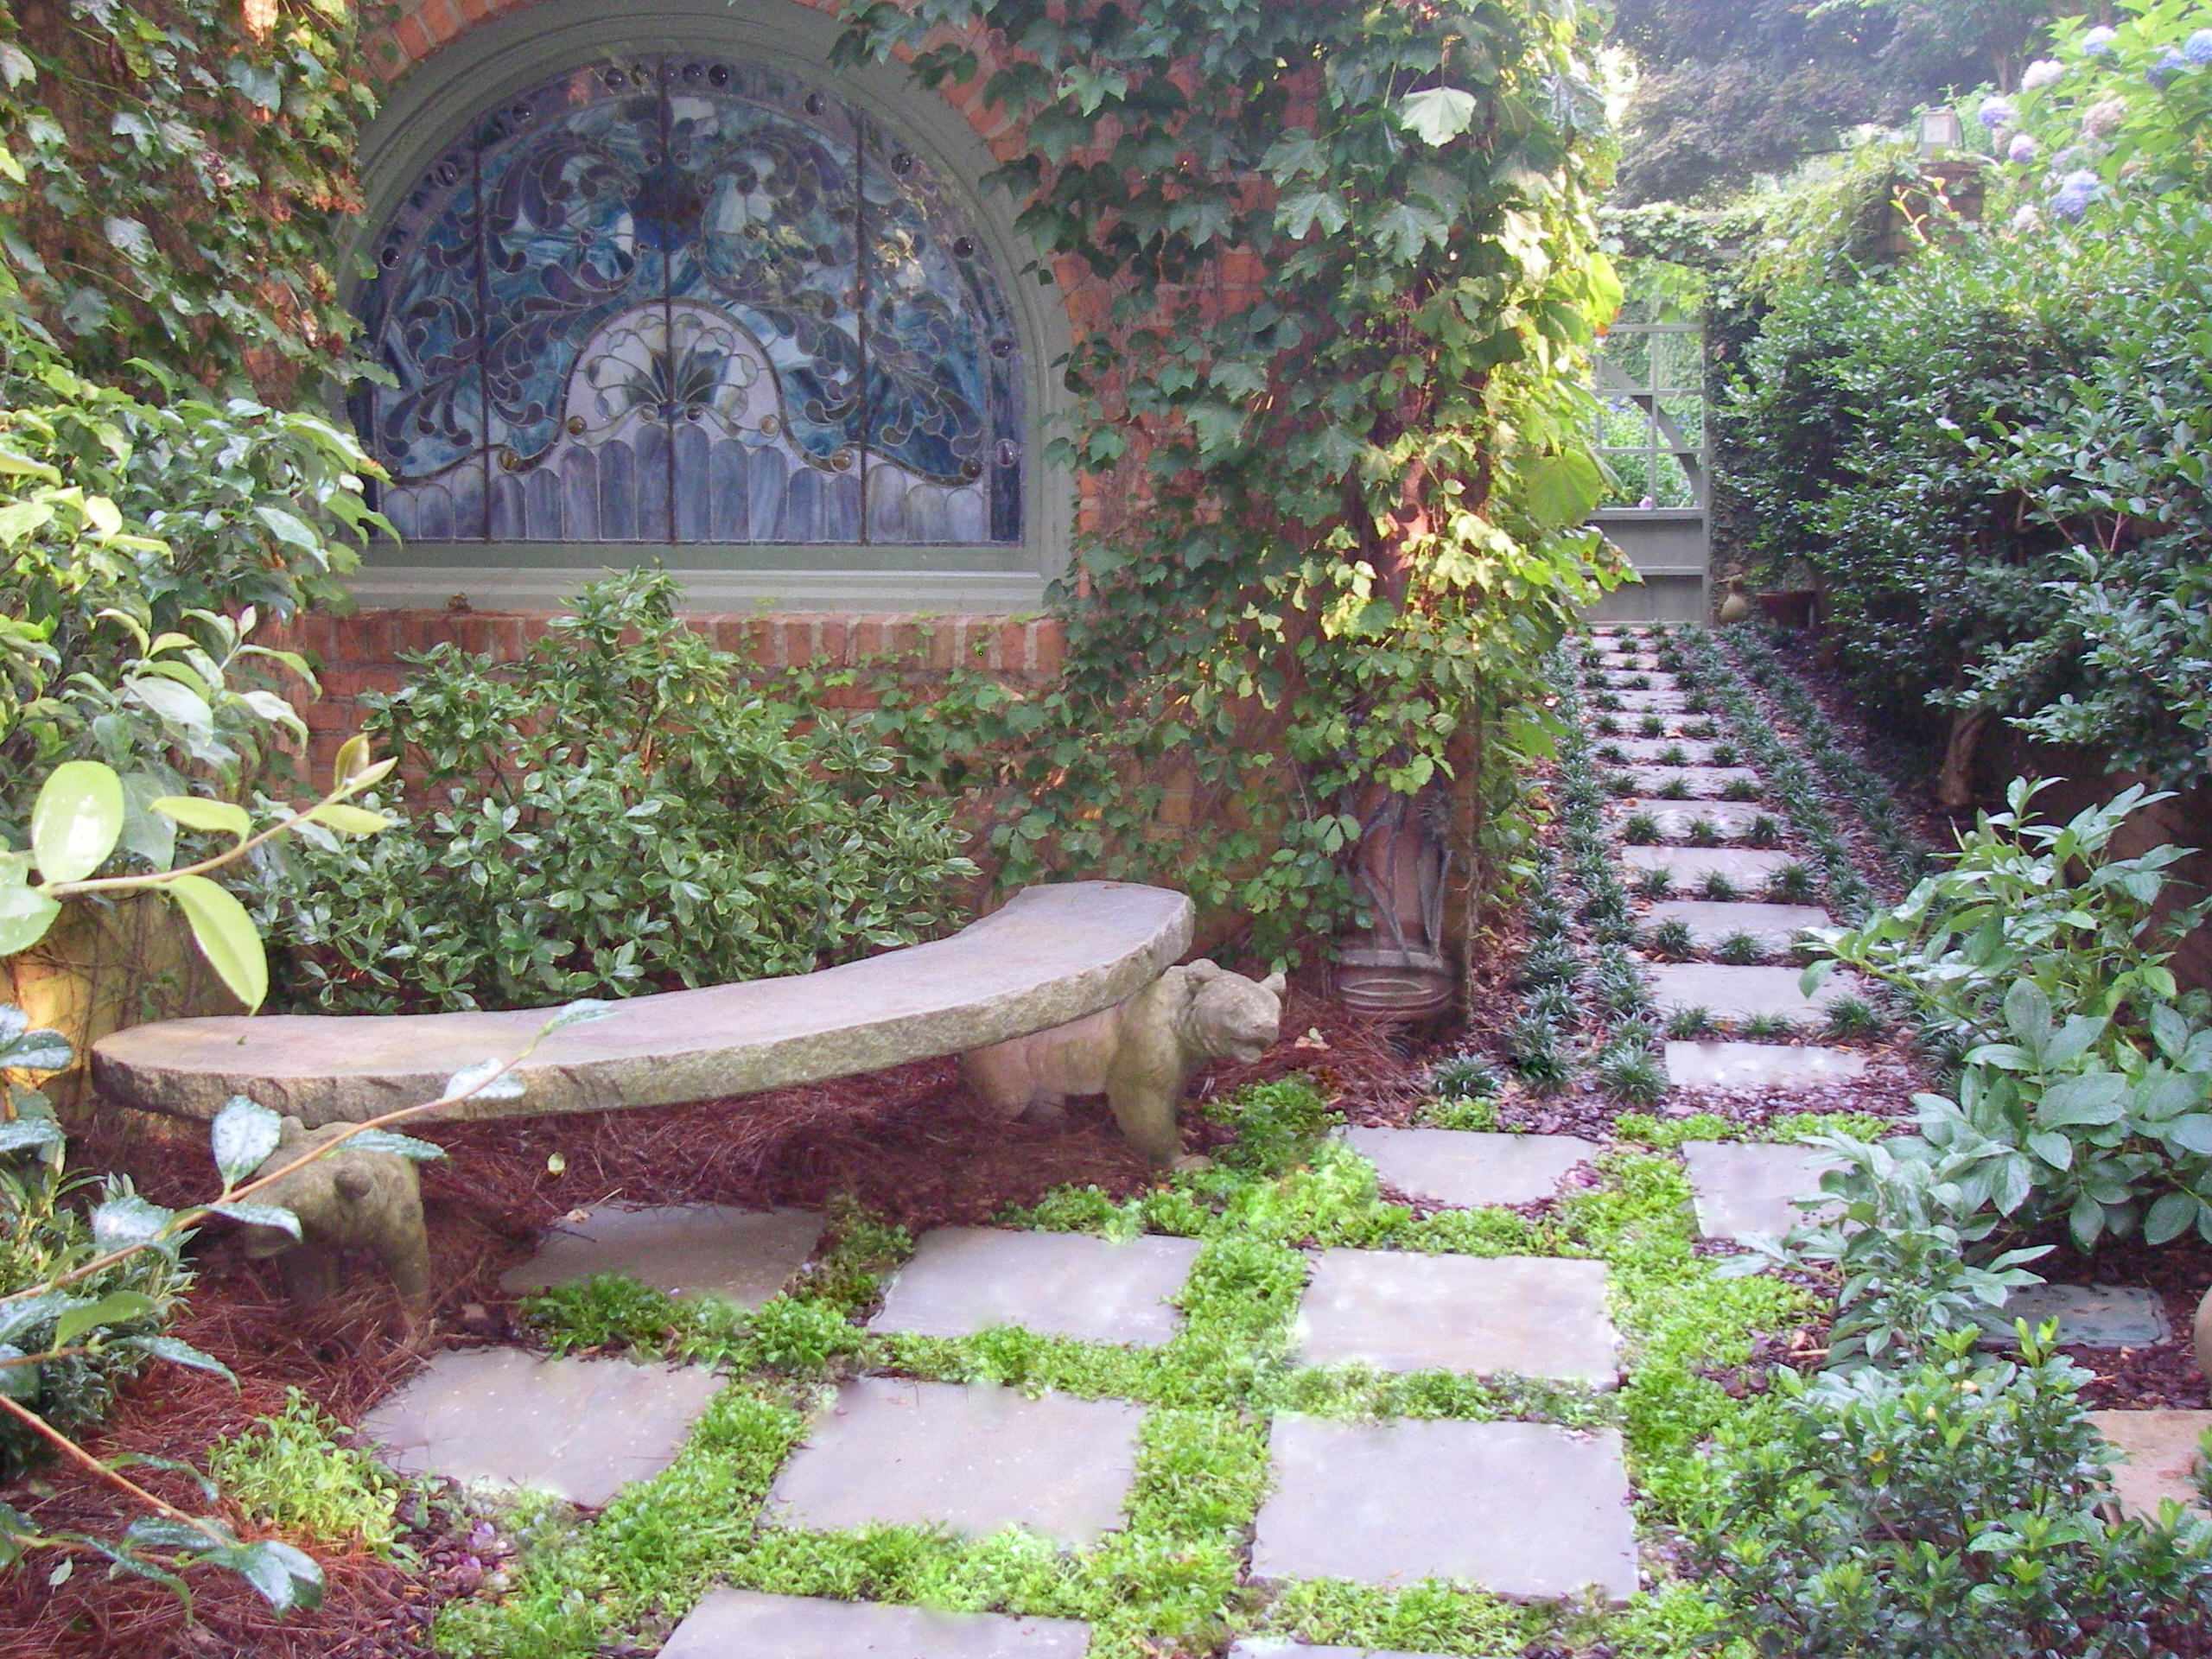 1 Prayer Garden Quiet Place To Sit, Prayer Garden Ideas For Home